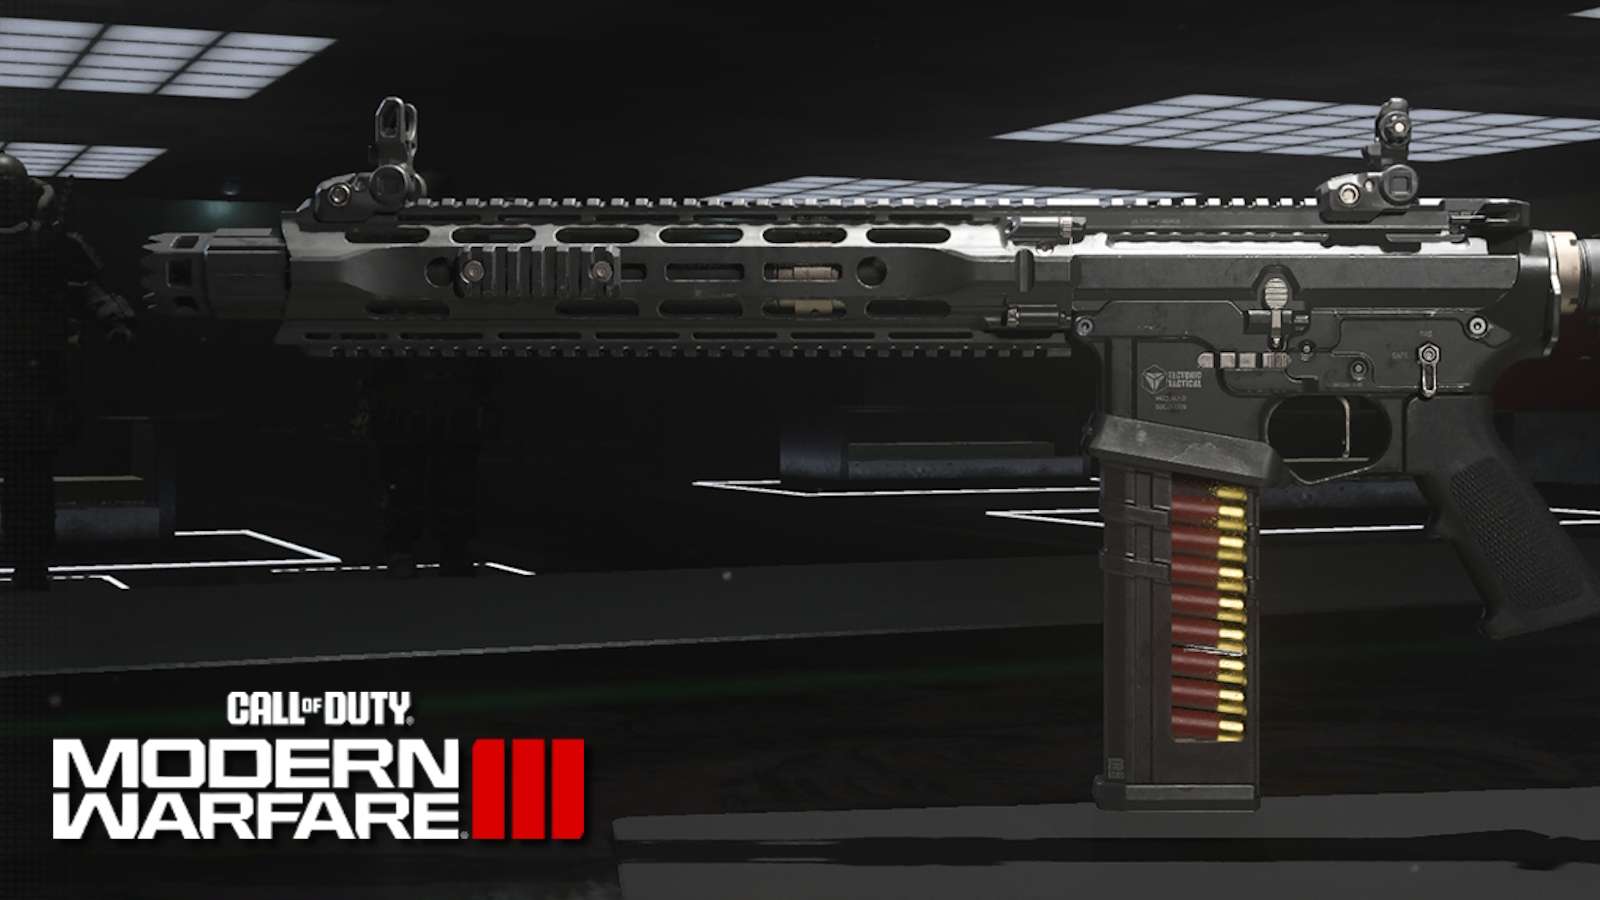 Riveter shotgun in Modern Warfare 3 and MW3 logo.